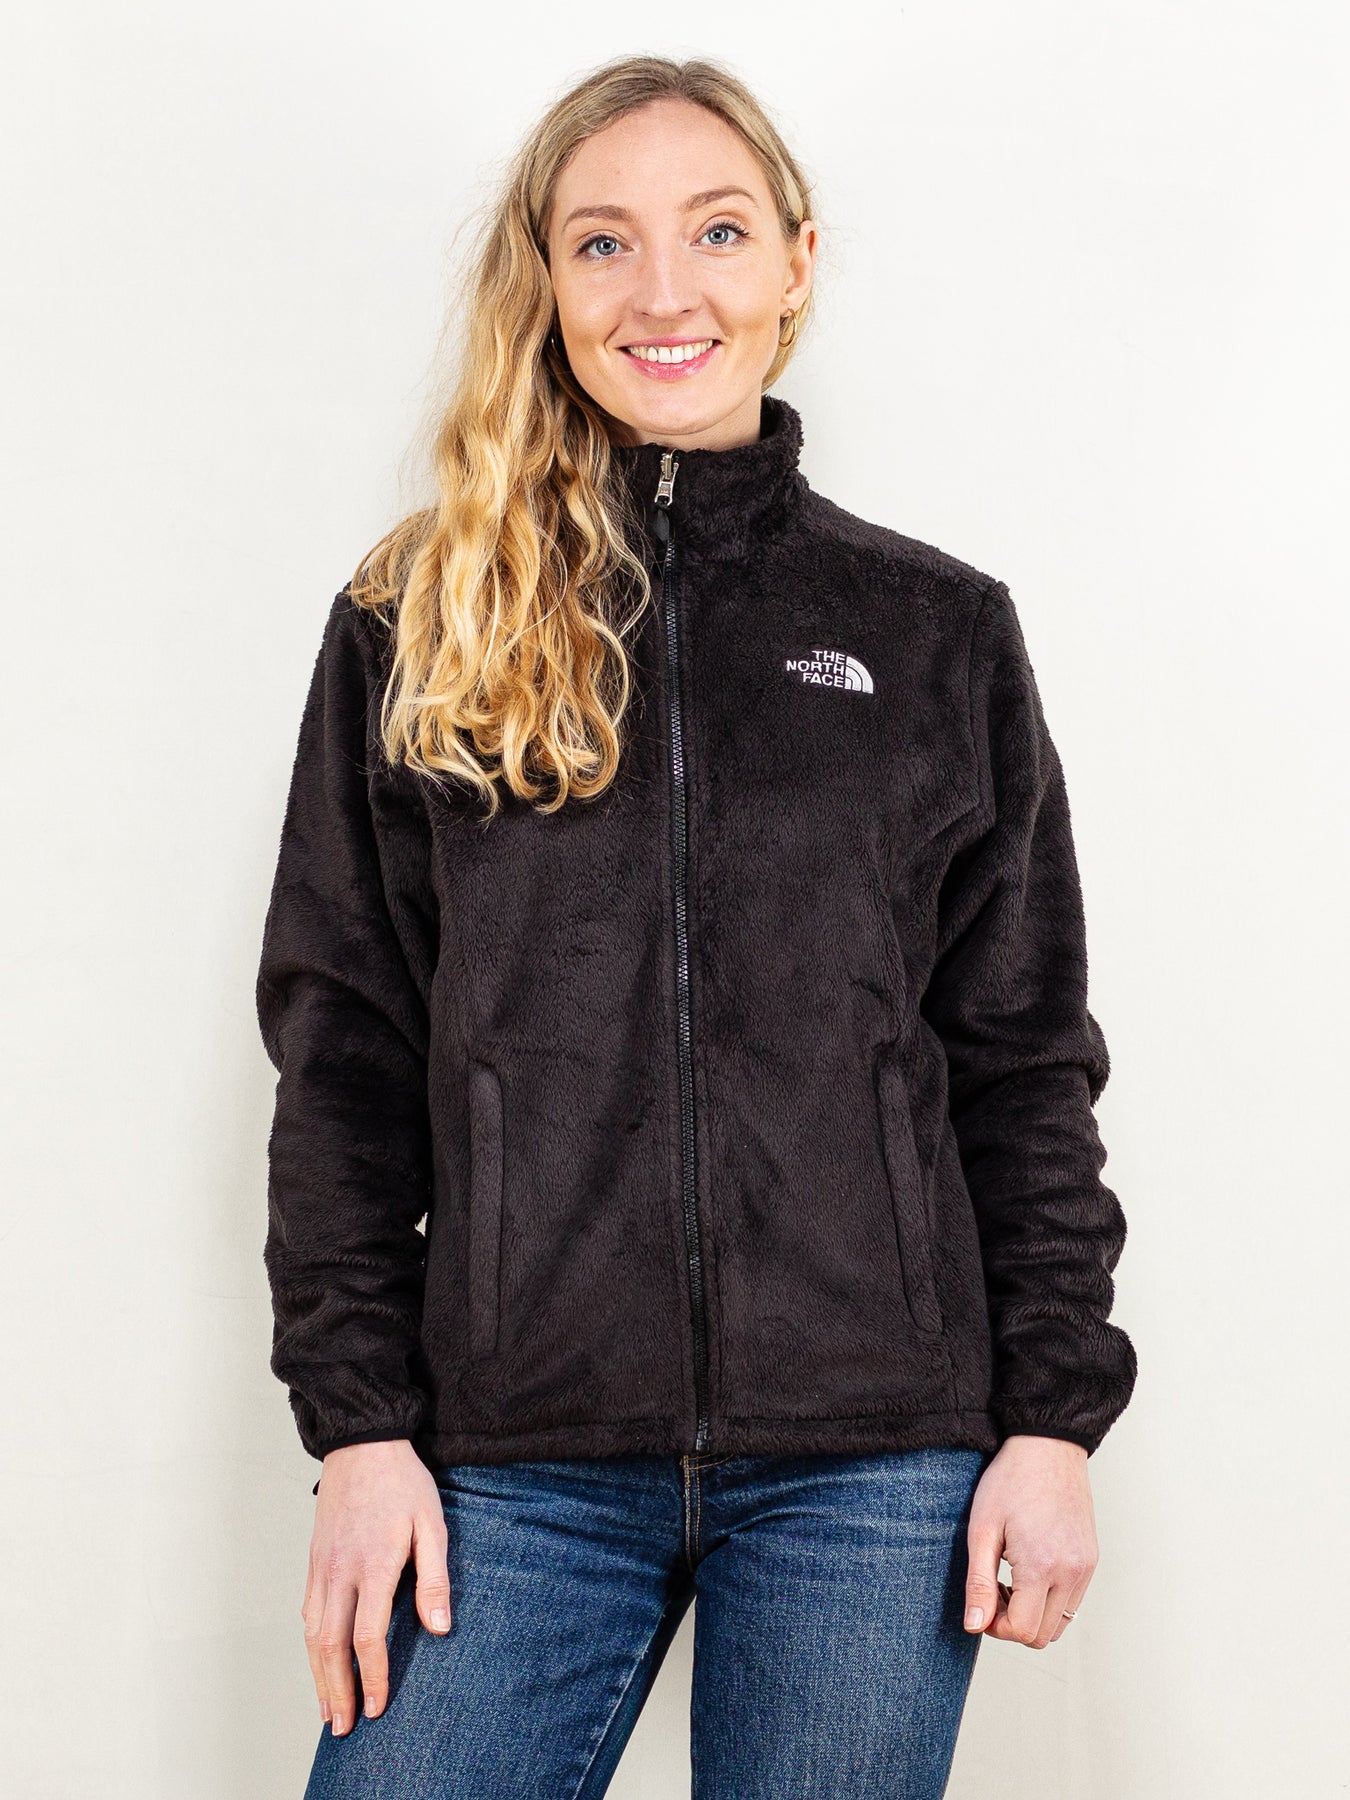 The North Face, Jackets & Coats, The North Face Osito Jacket Gray Fleece  Jacket